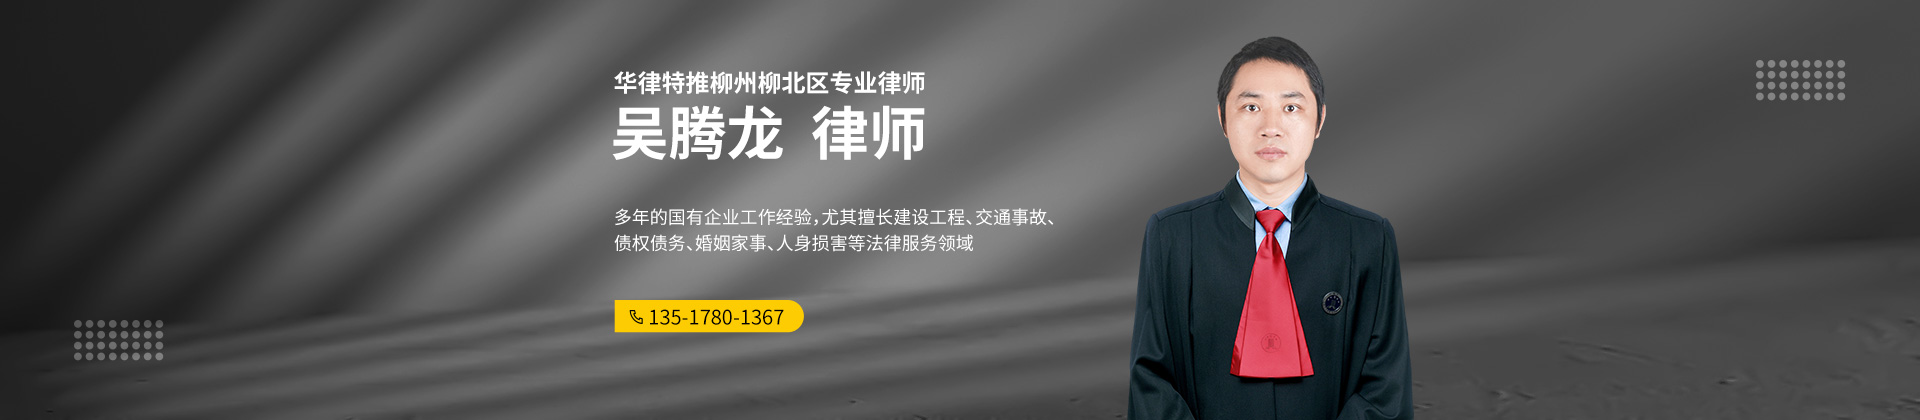 柳北区商标在线律师-吴腾龙律师